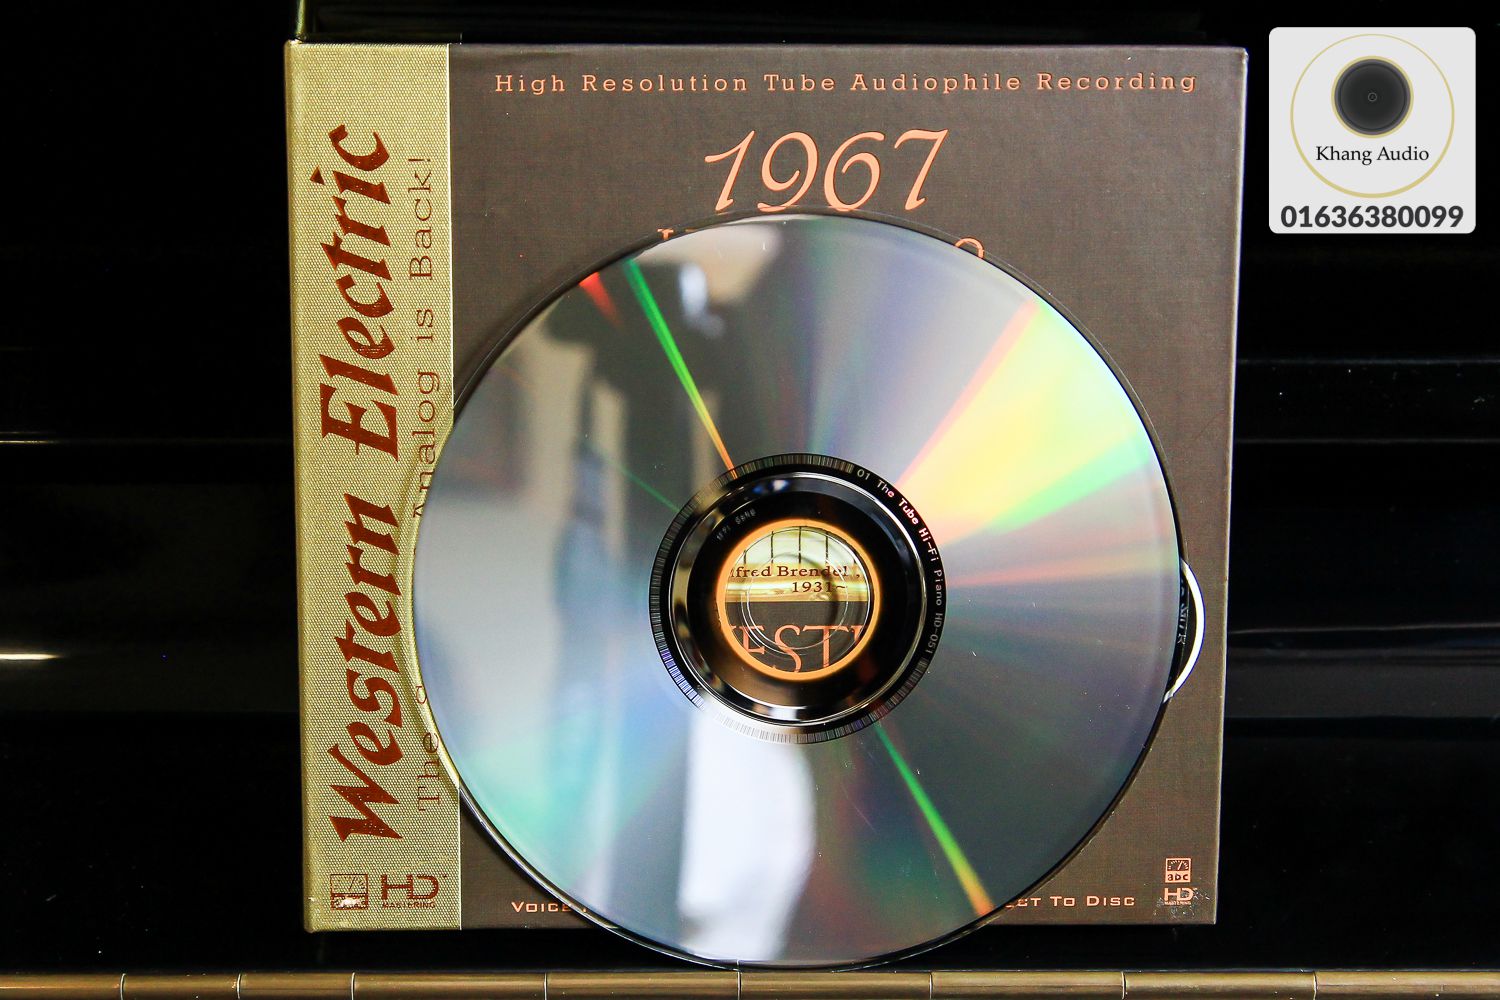 Western Electric Sound - 1967 Hi-Fi Piano Khang Audio 0336380099